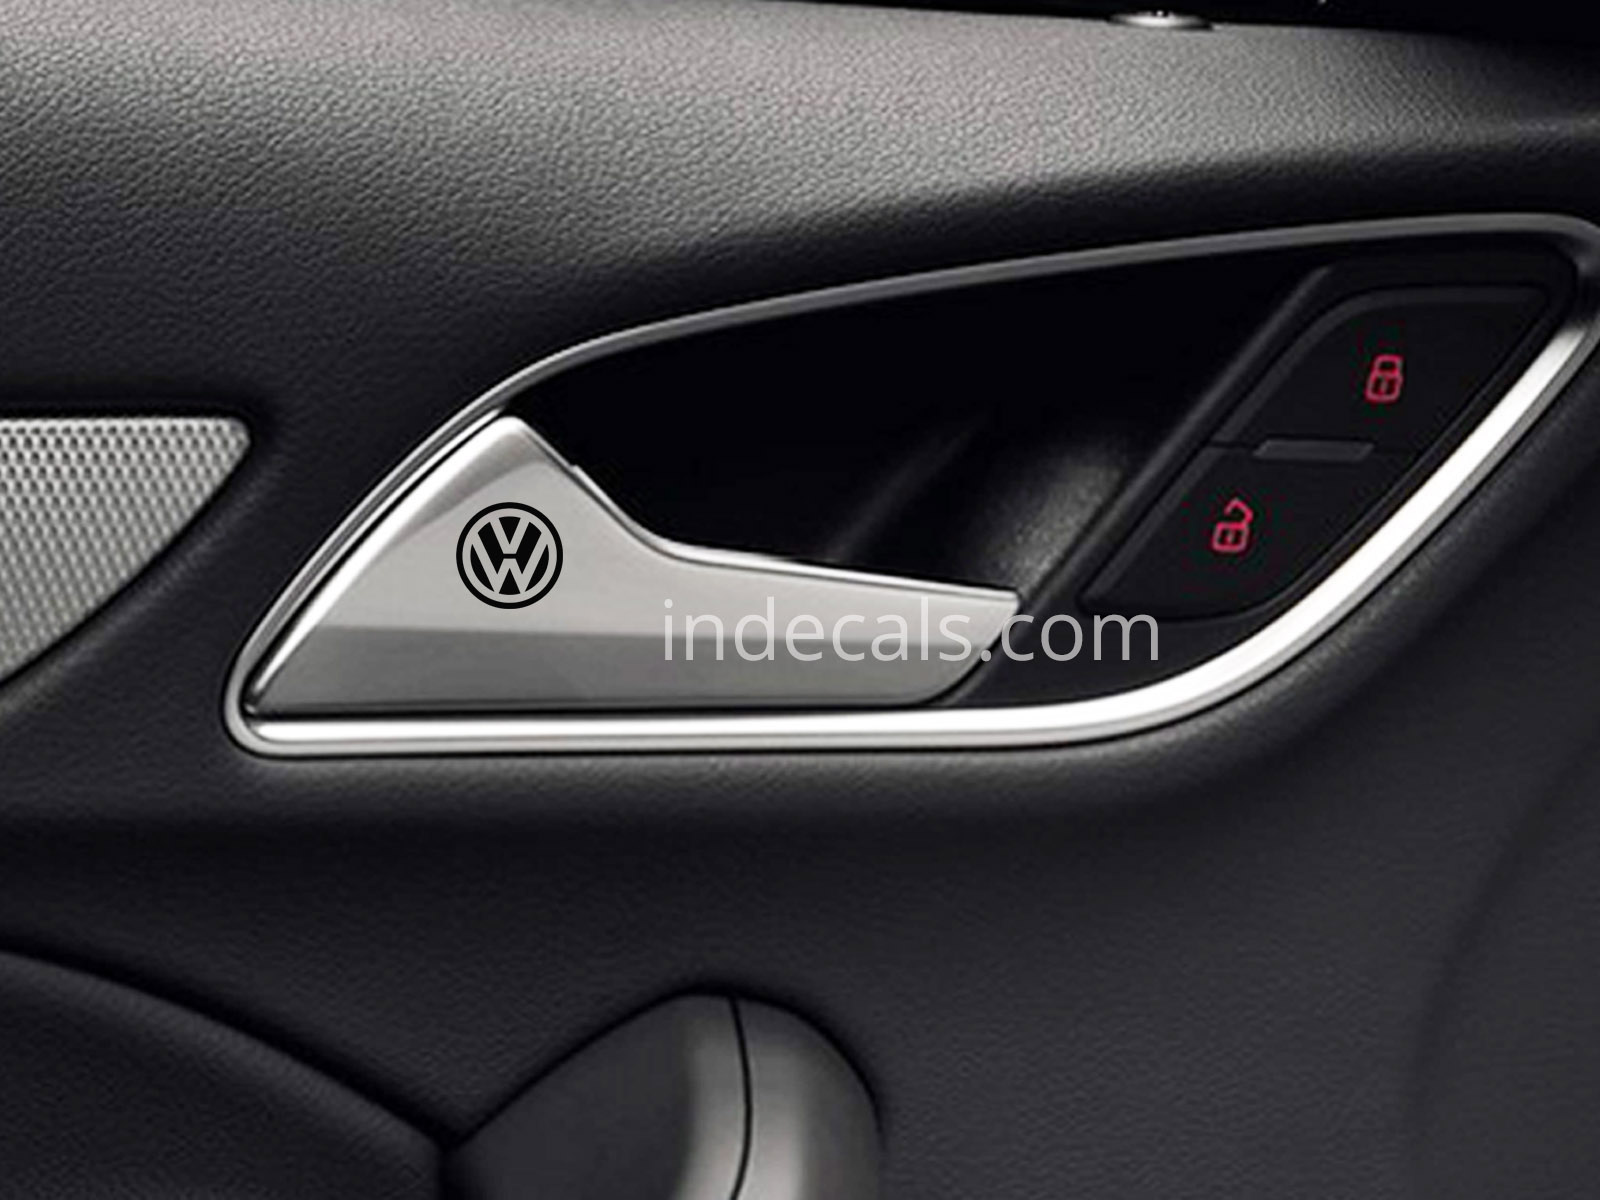 6 x Volkswagen Stickers for Door Handle - Black